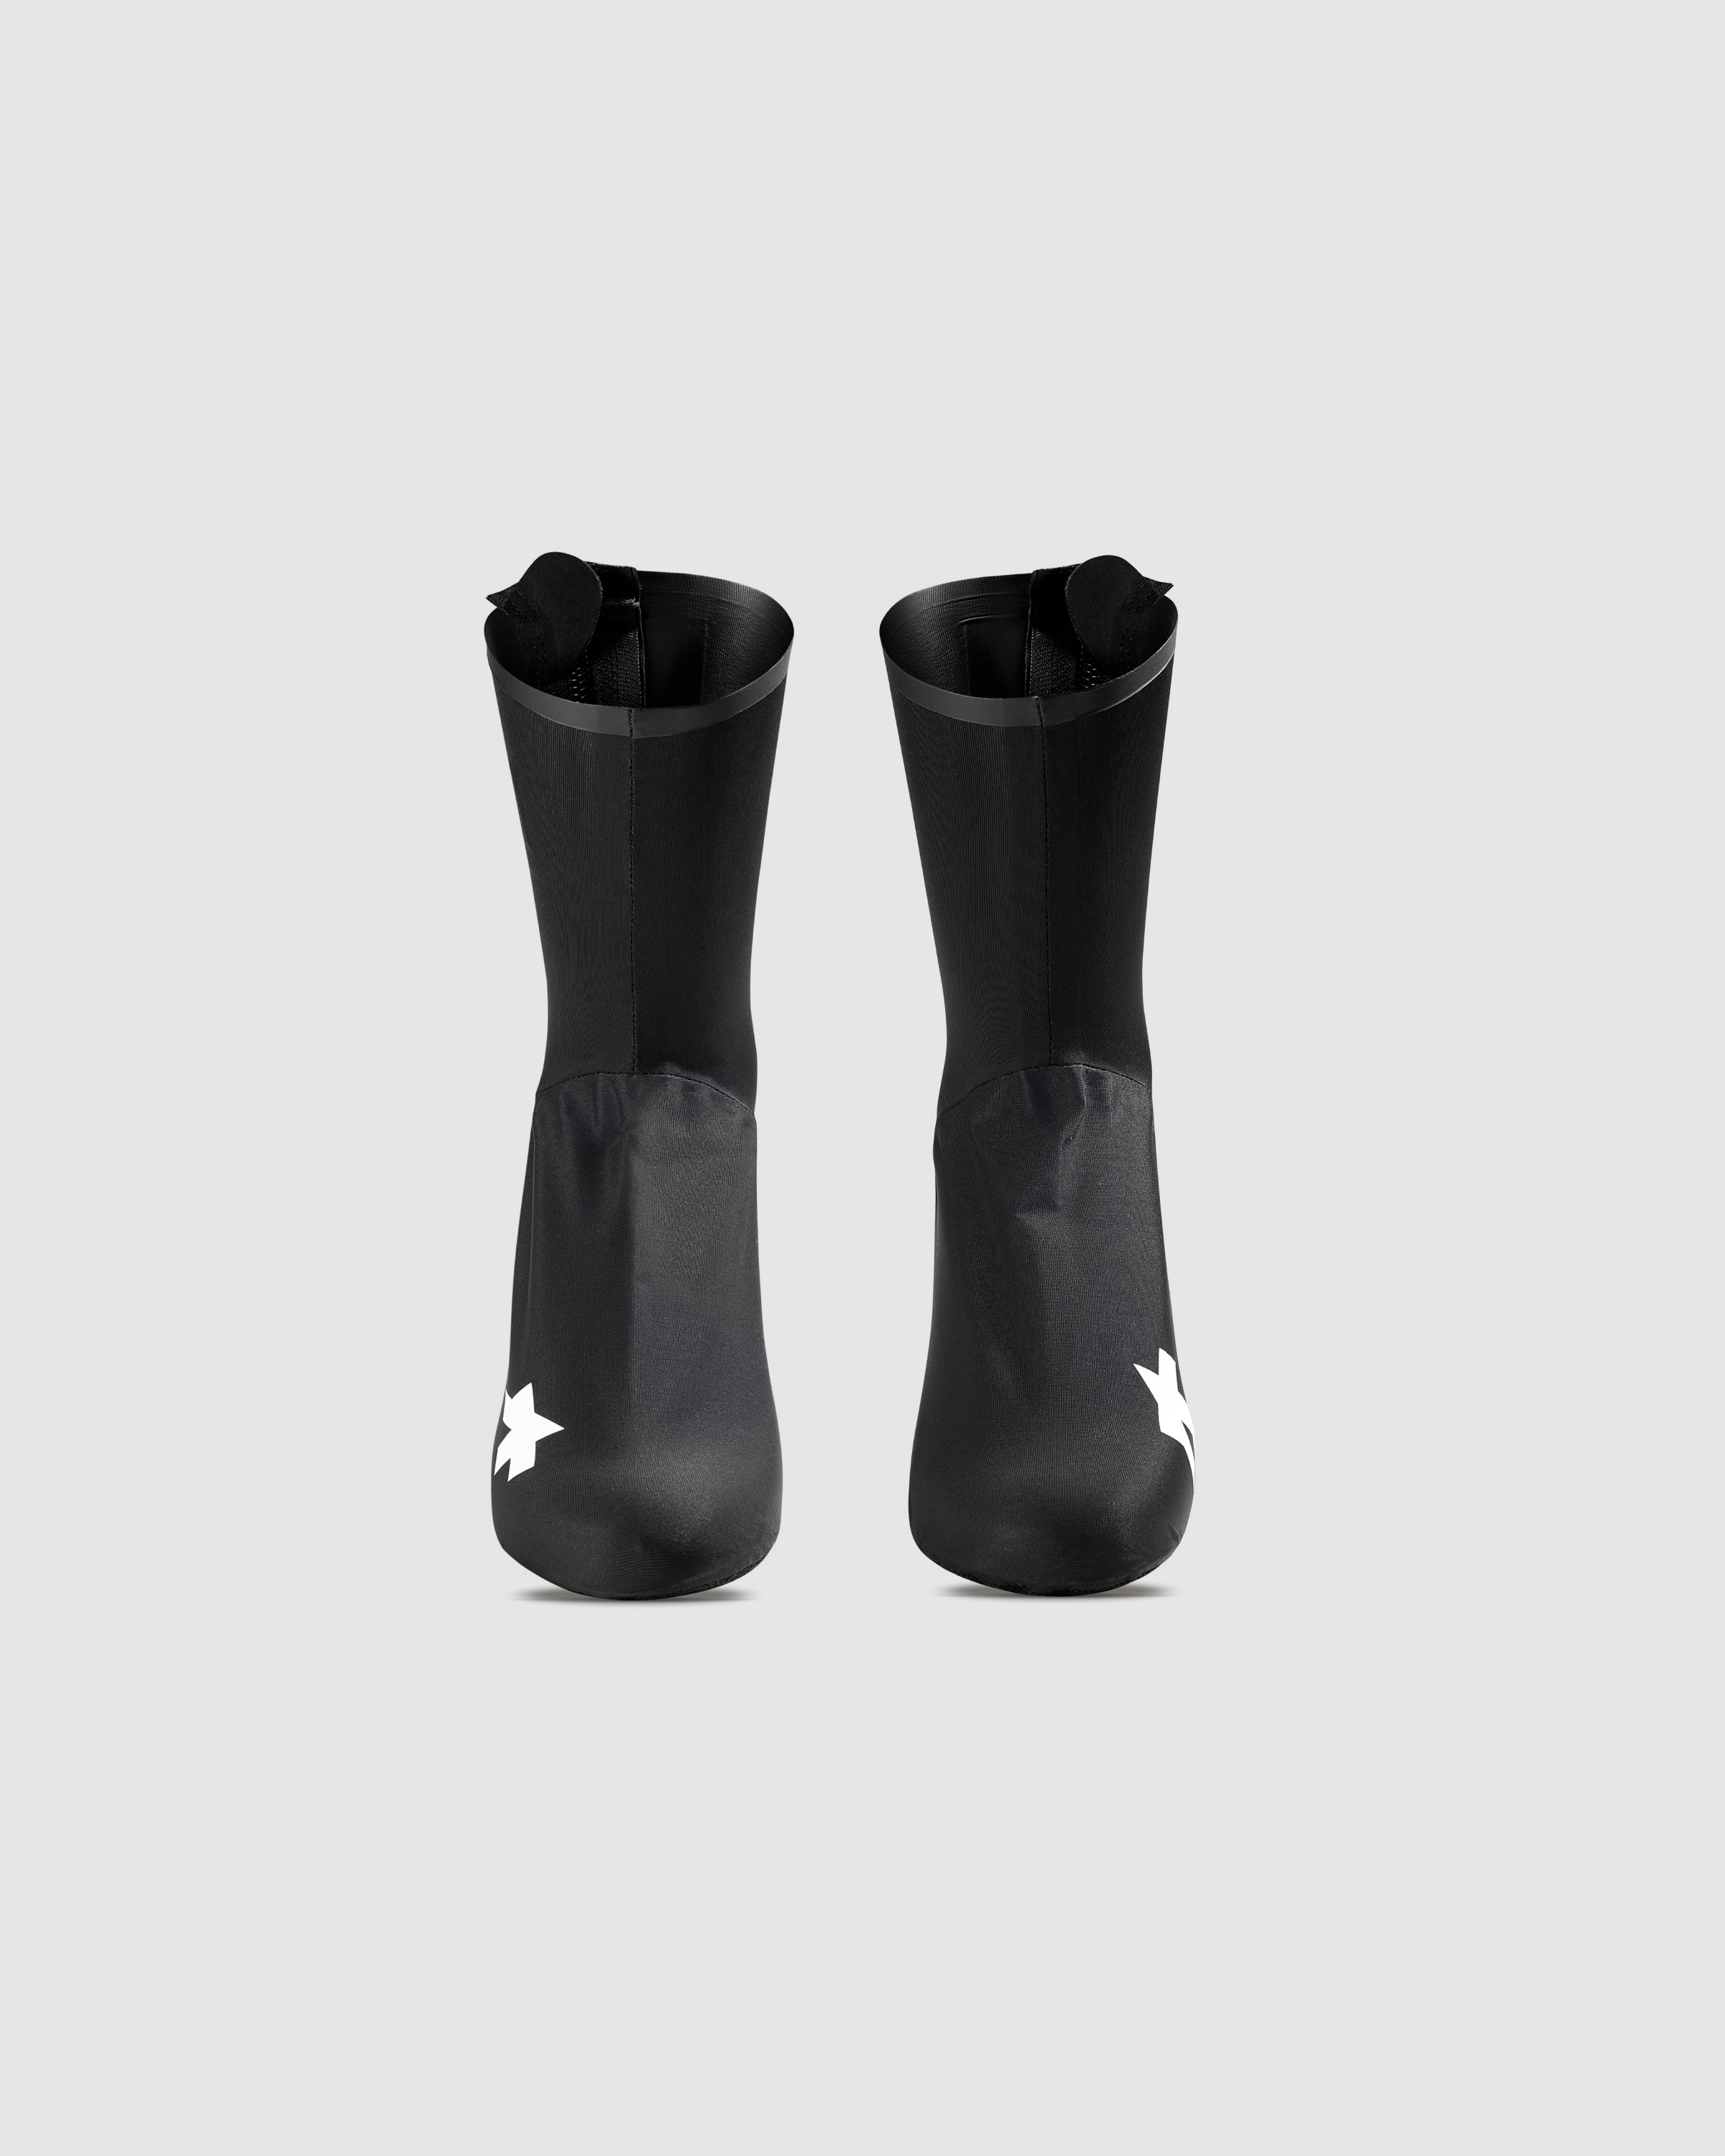 Couvre-chaussures pluie Assos Rain Booties noir fins et étanches